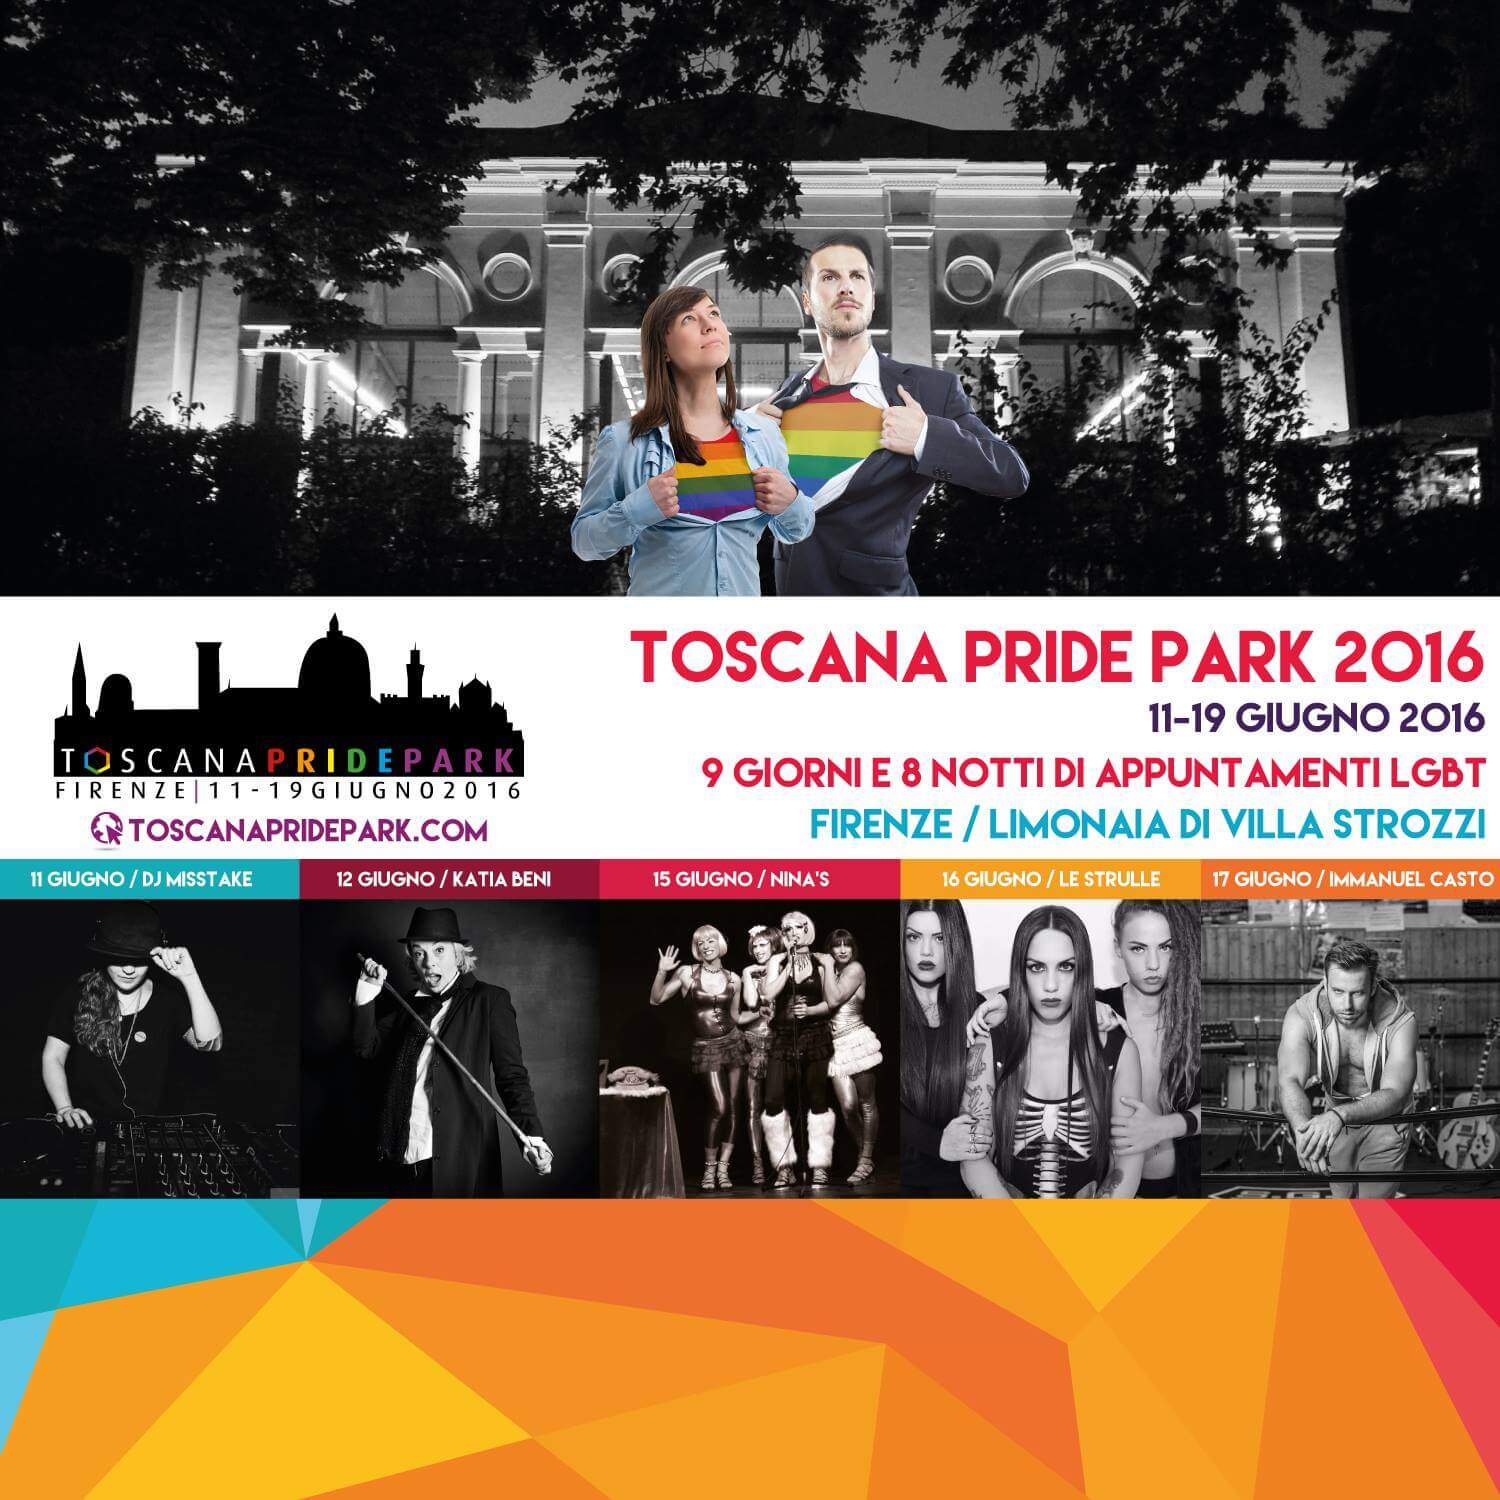 Pride Park Firenze 2017: eventi e cultura per celebrare la comunità LGBT - 13227795 599545070205001 1097842607603981100 o - Gay.it